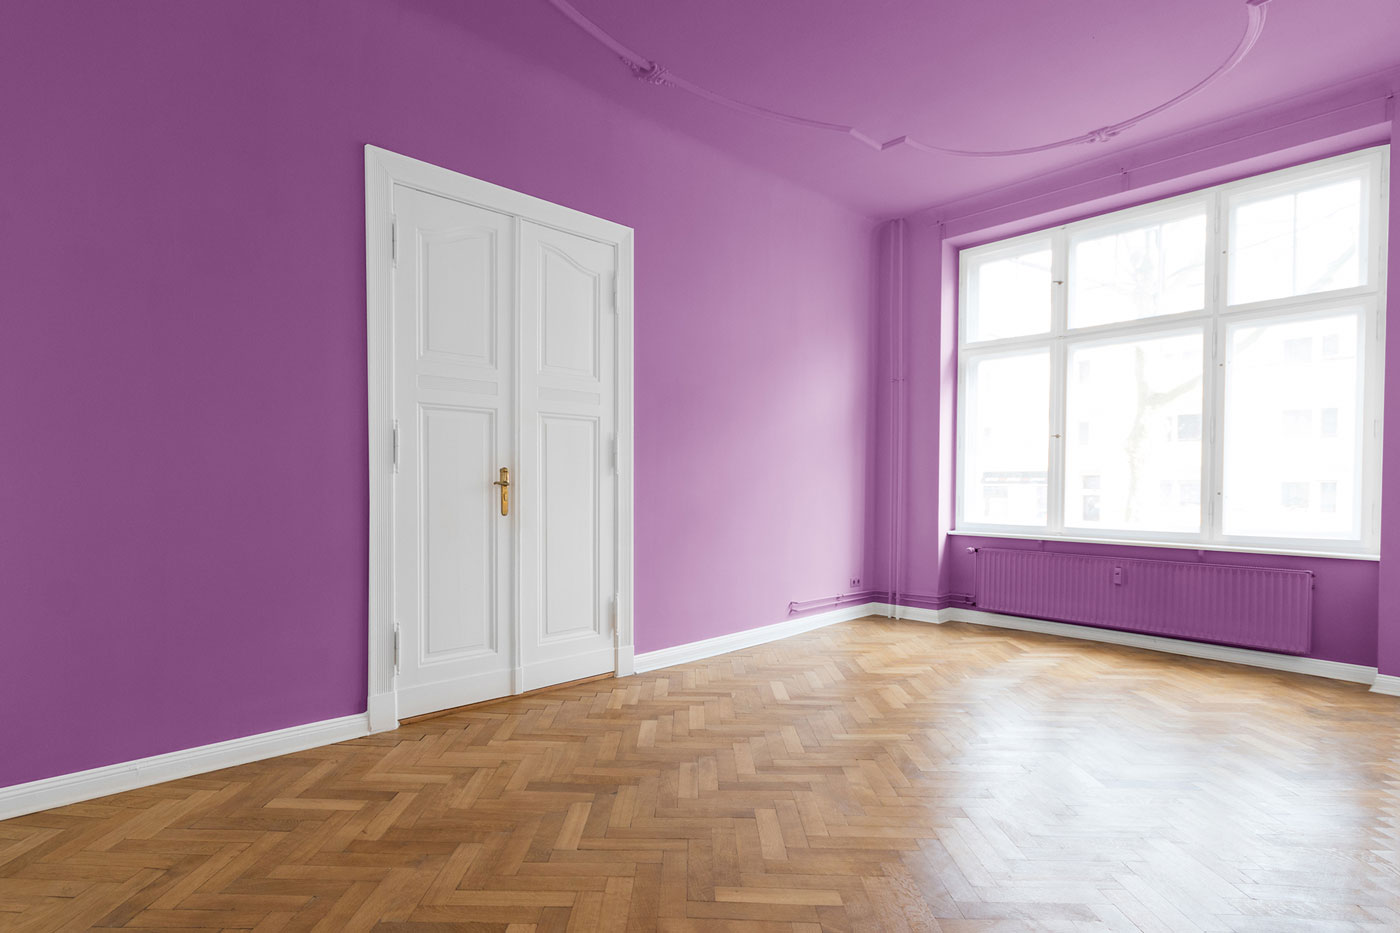 a purple painted room